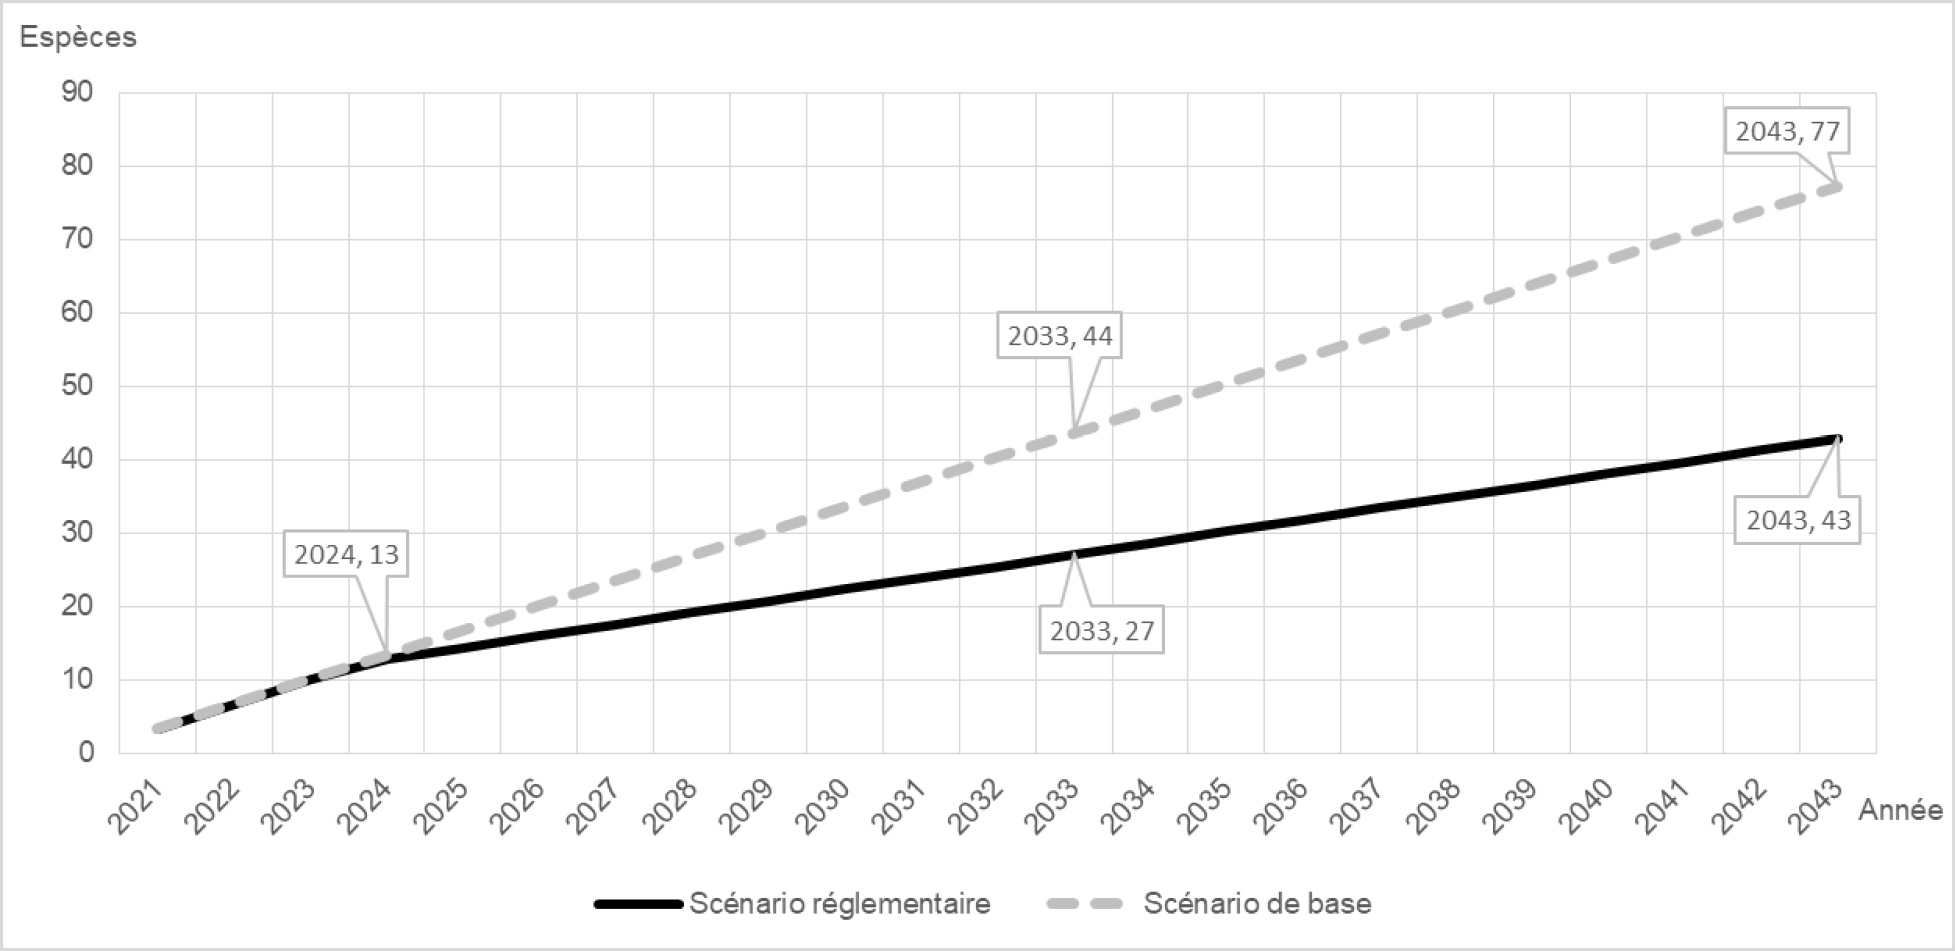 Figure 1 : Nombre d'espèces par année dans le scénario de base et le scénario réglementaire – Version textuelle en dessous du graphique